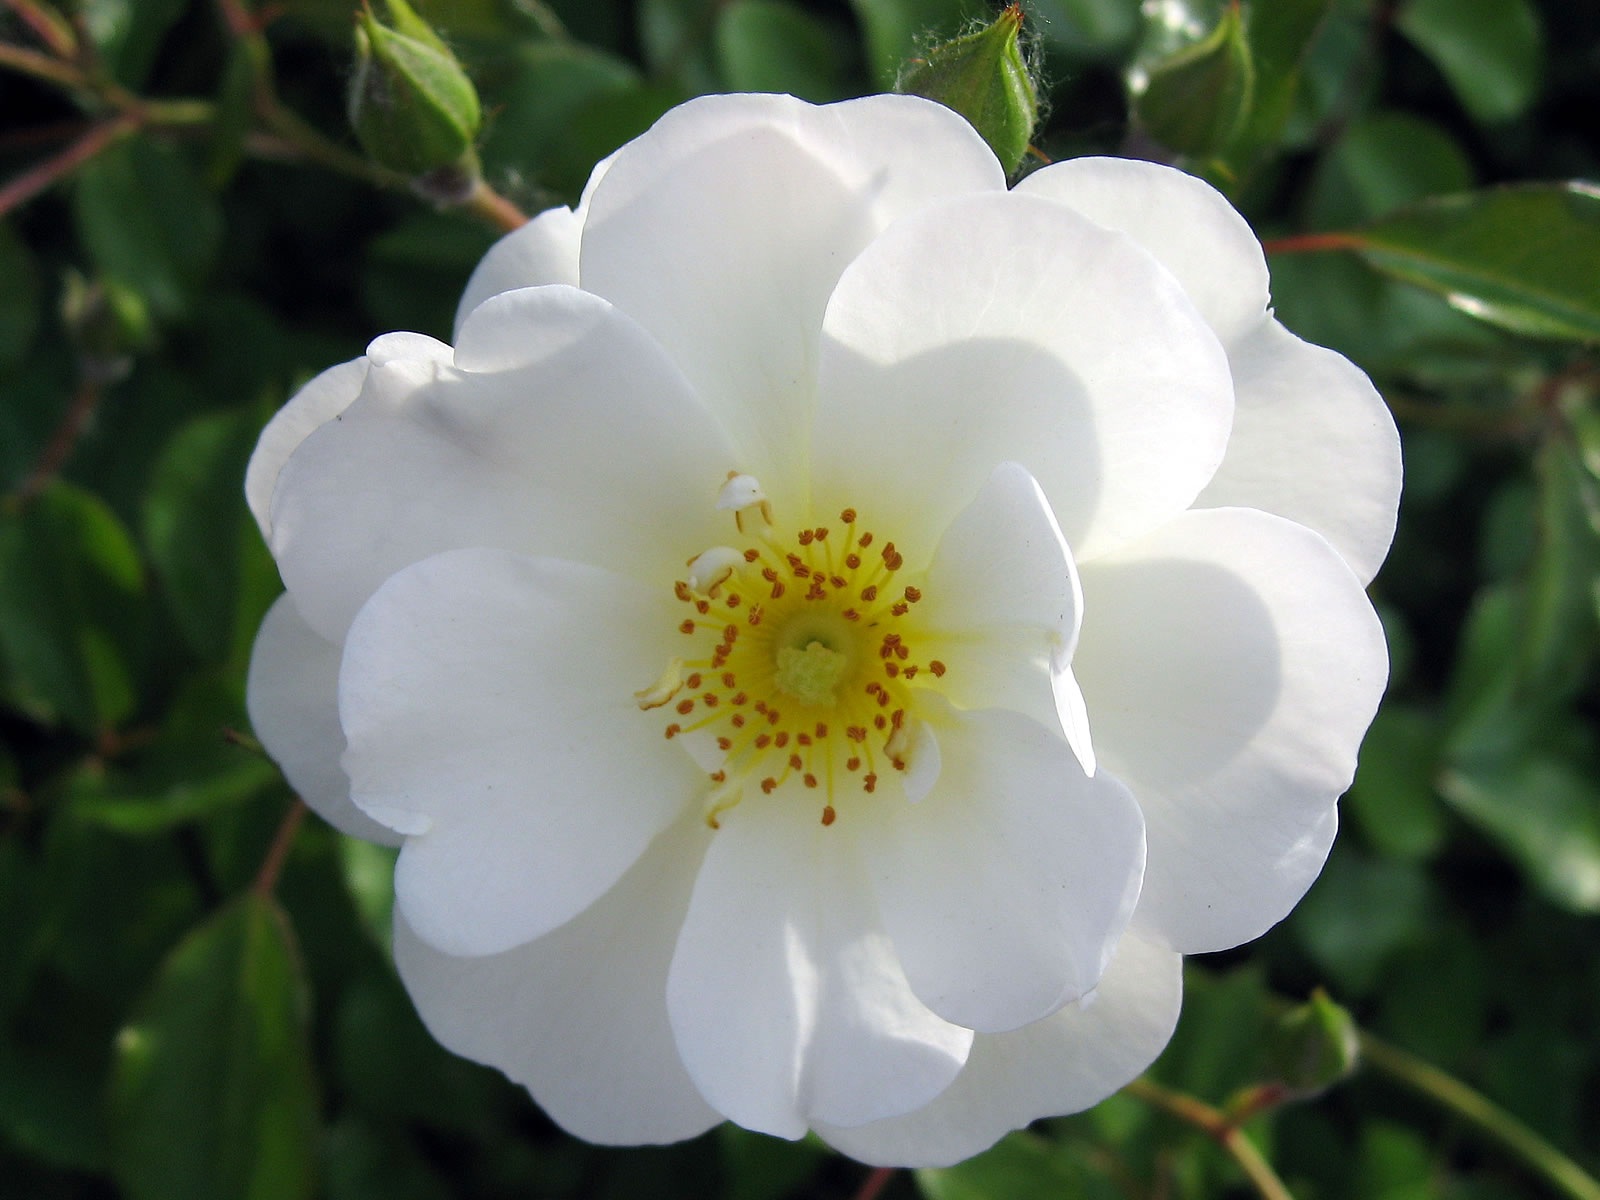 flowers_white_rose_flowers-0243.jpg